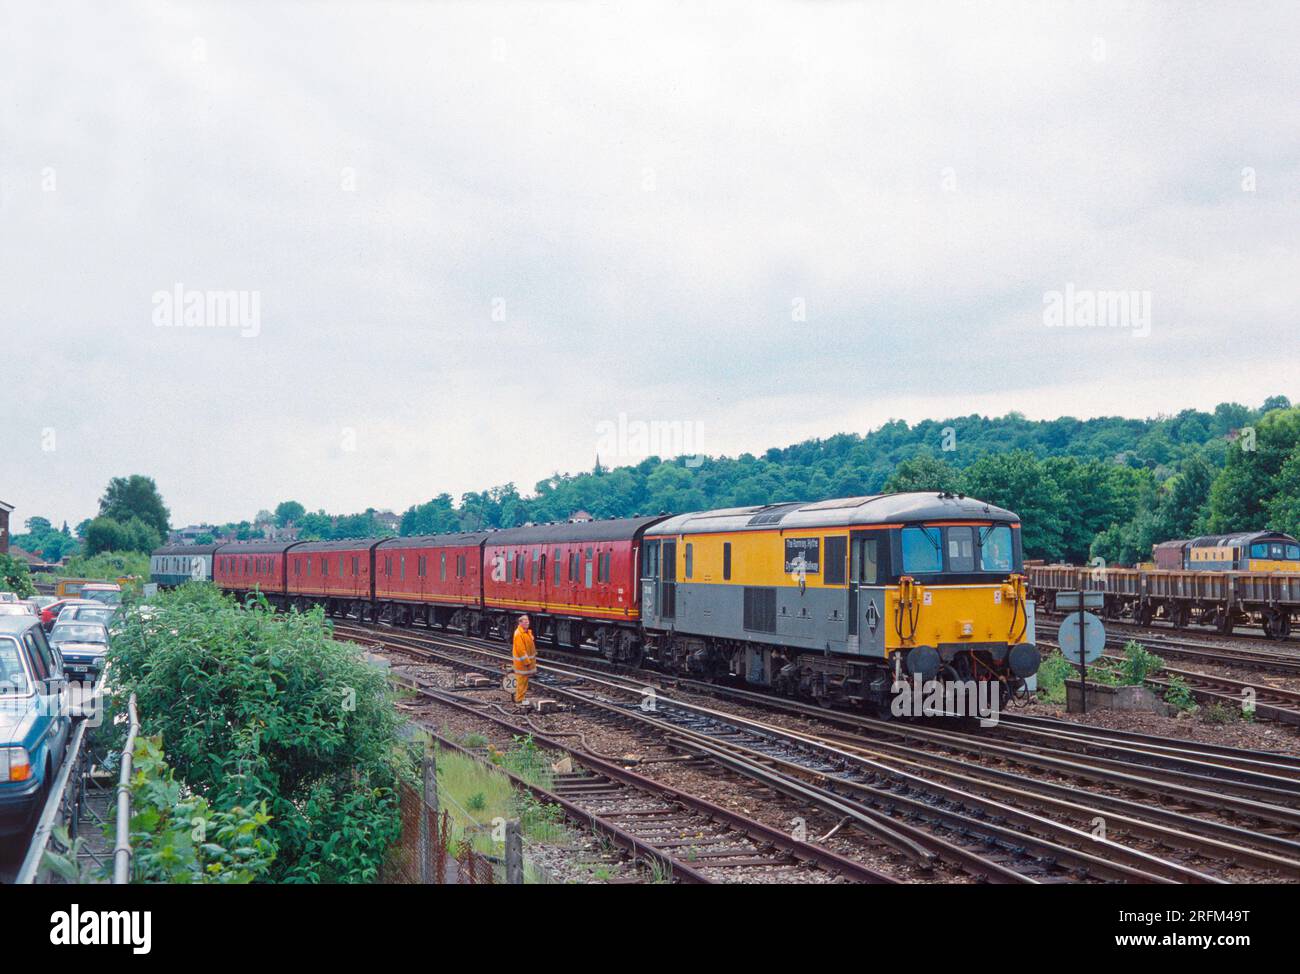 Am 8. Juni 1994 in Redhill verkehrte eine Elektro-Diesellokomotive der Klasse 73 mit der Nummer 73118 der Royal Mail. Stockfoto